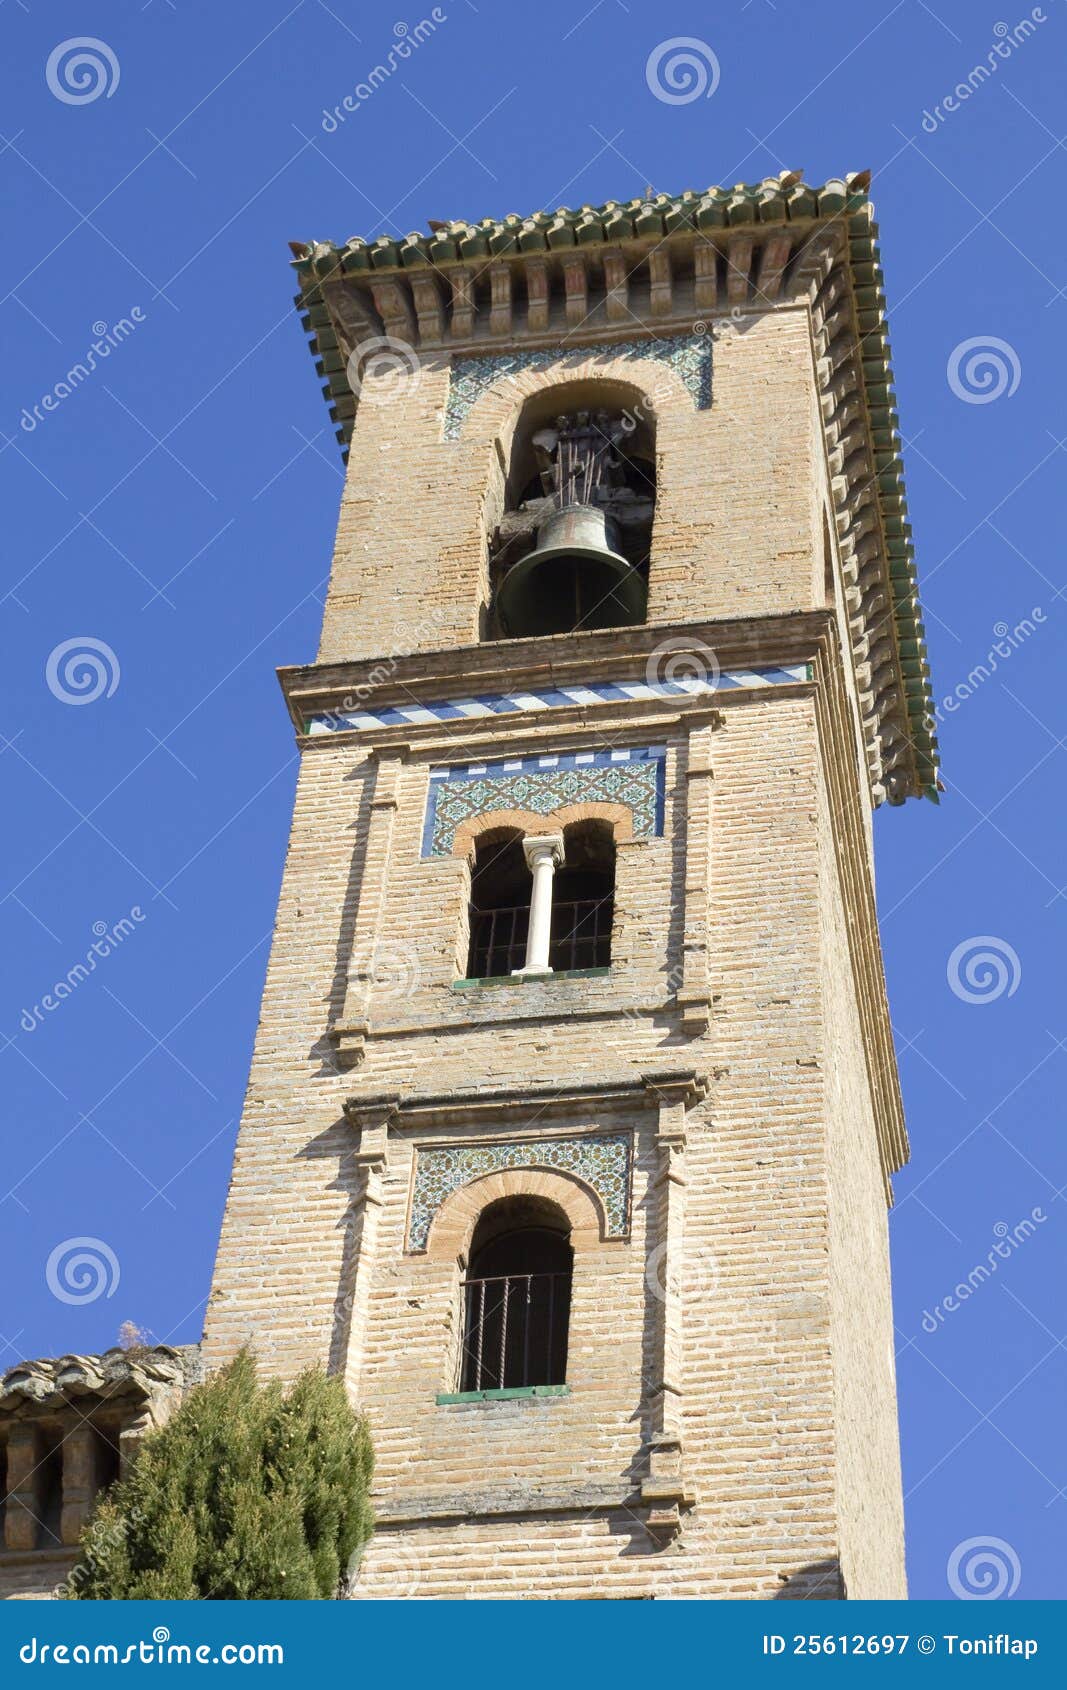 church of saint gil and saint anne in granada.